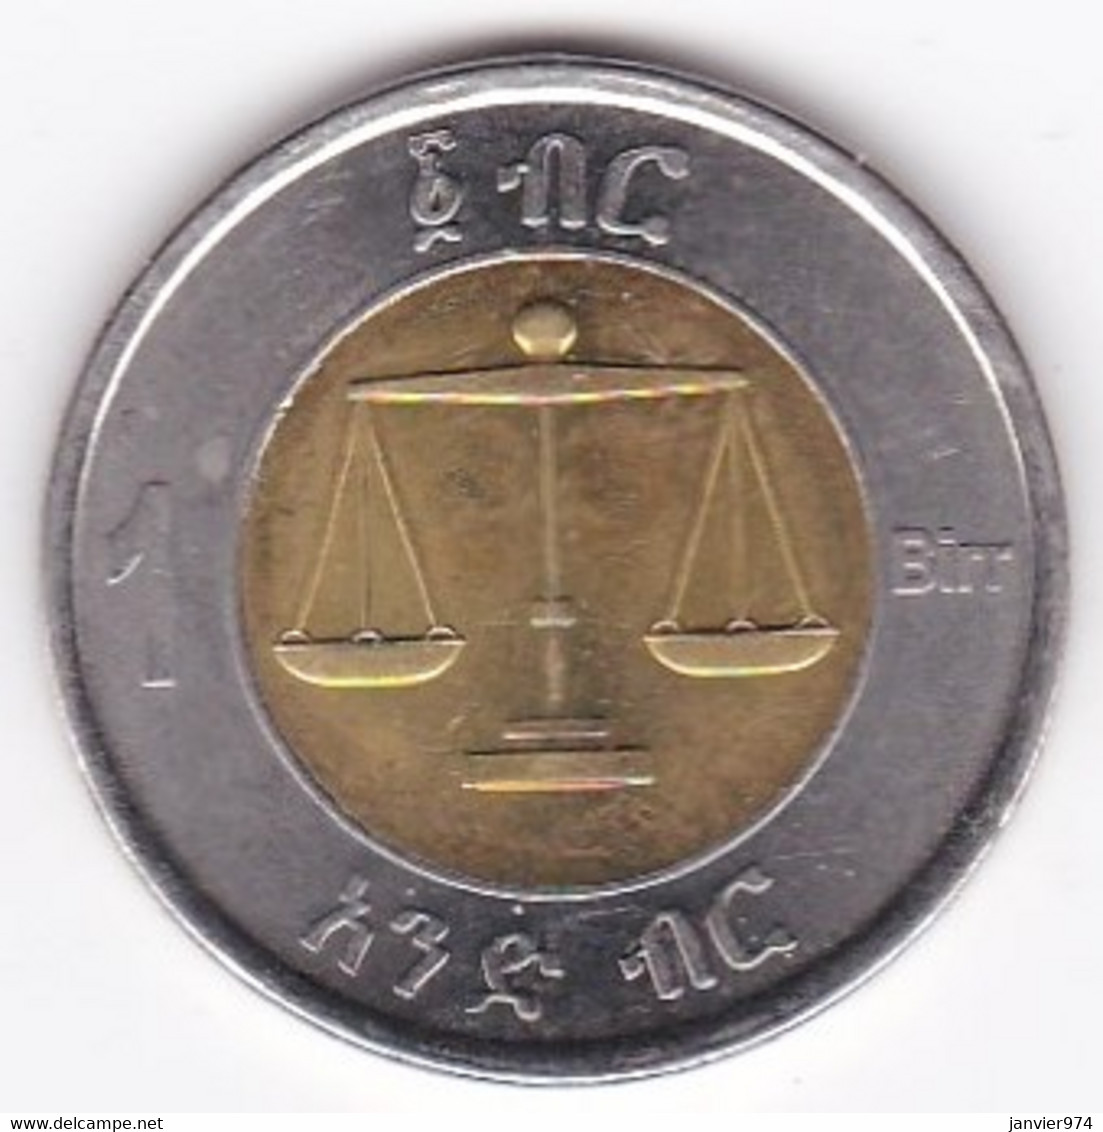 Ethiopie 1 Birr 2002 (2010), Bimétallique , KM # 78 - Ethiopia